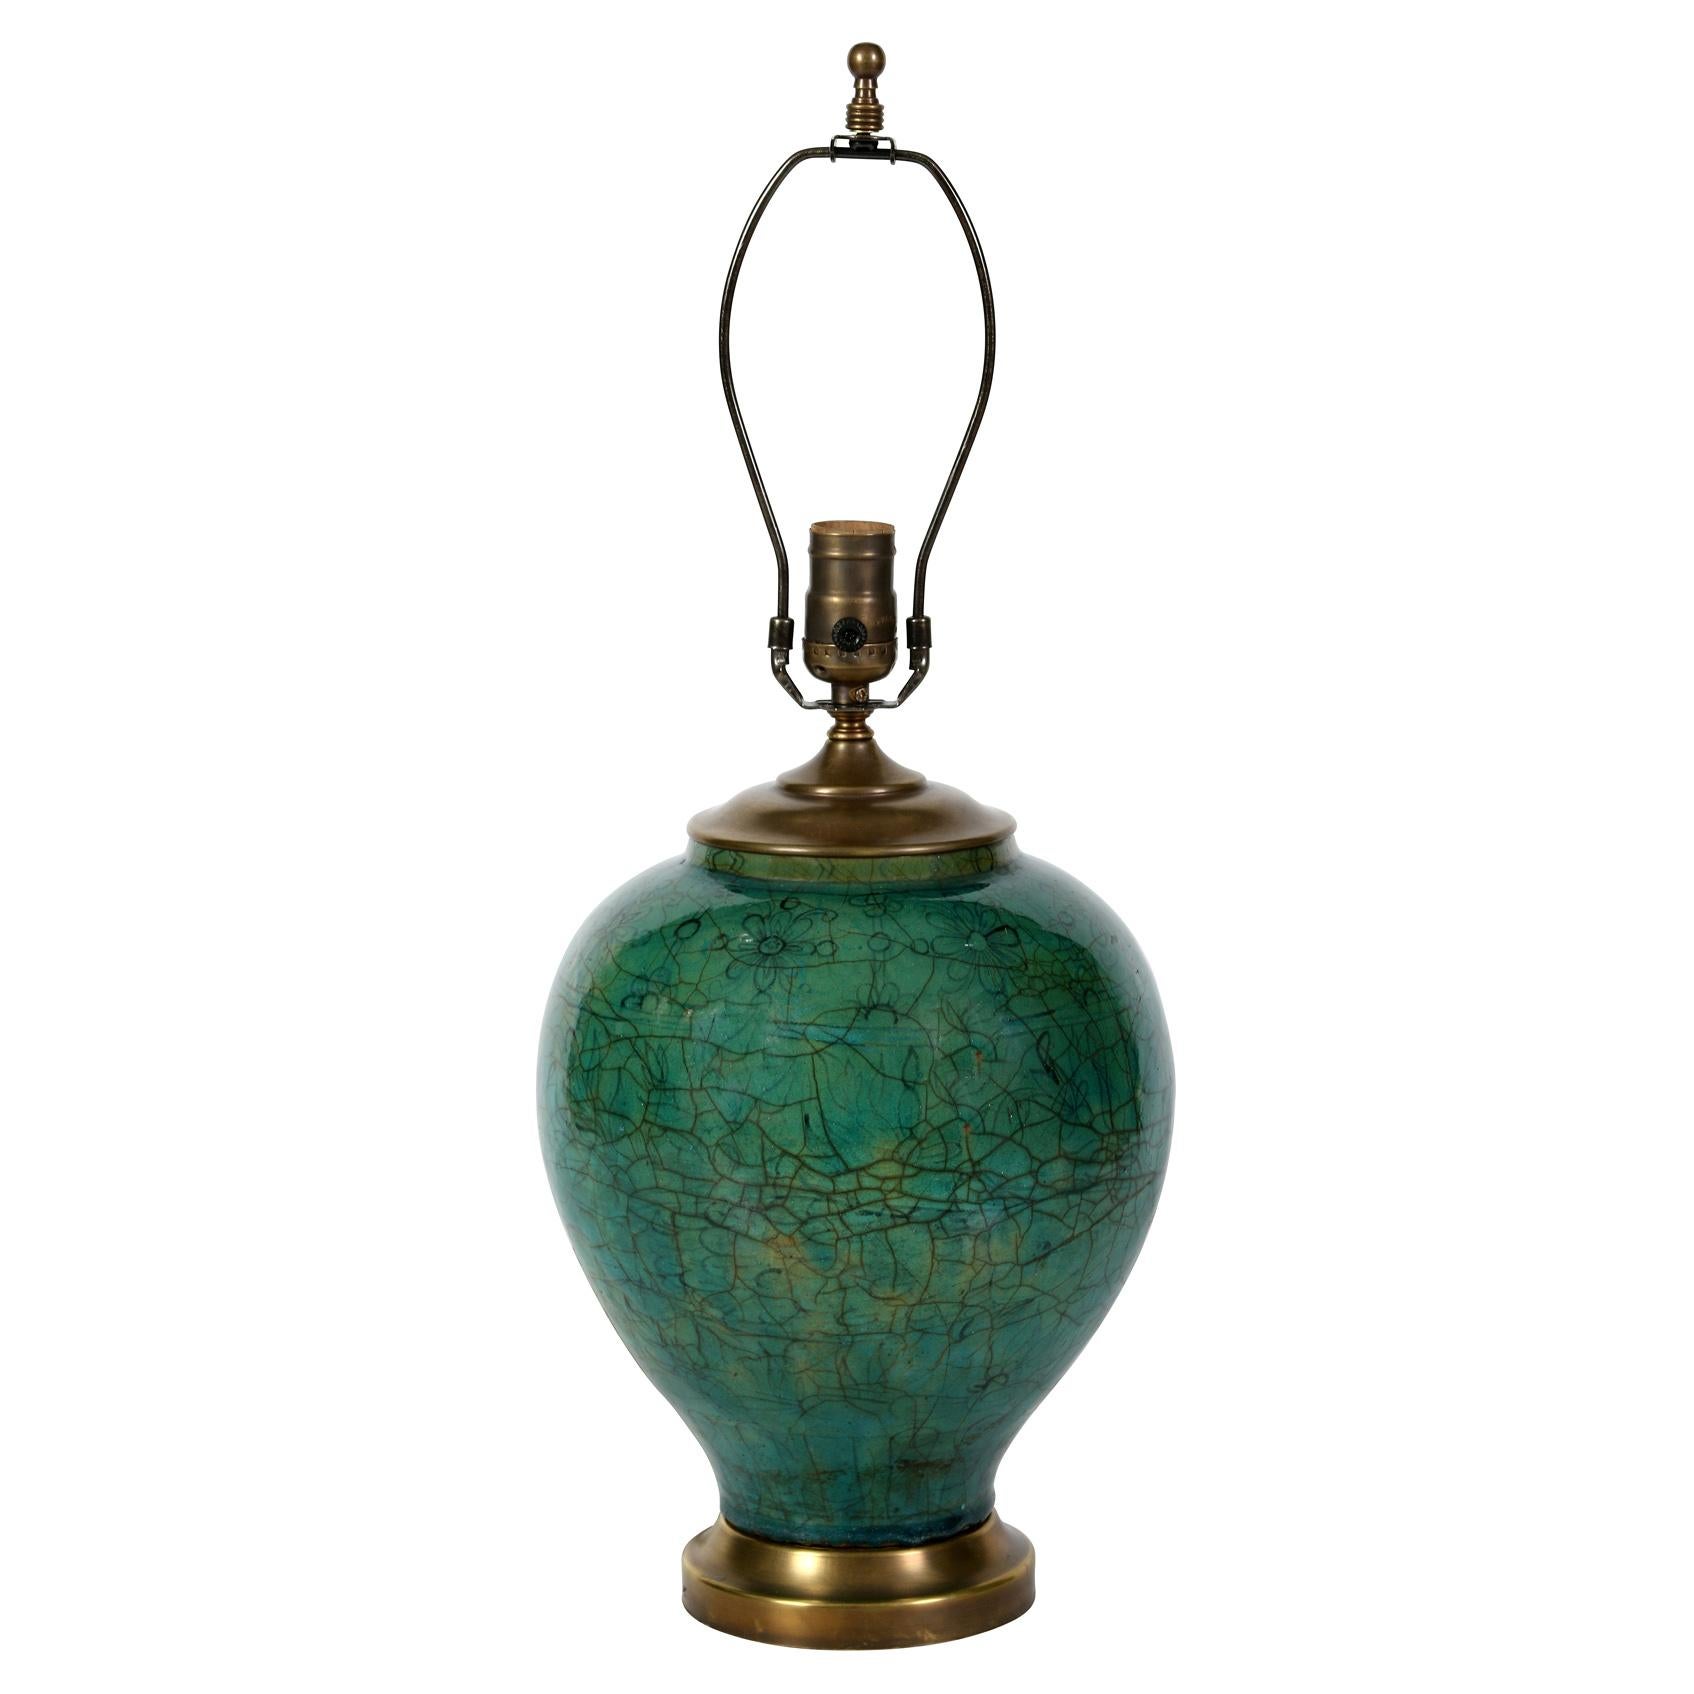 Lampe en céramique verte de style asiatique, avec une glaçure craquelée d'un vert jade profond.  Montée sur une base en laiton, la lampe a un abat-jour en lin plissé.